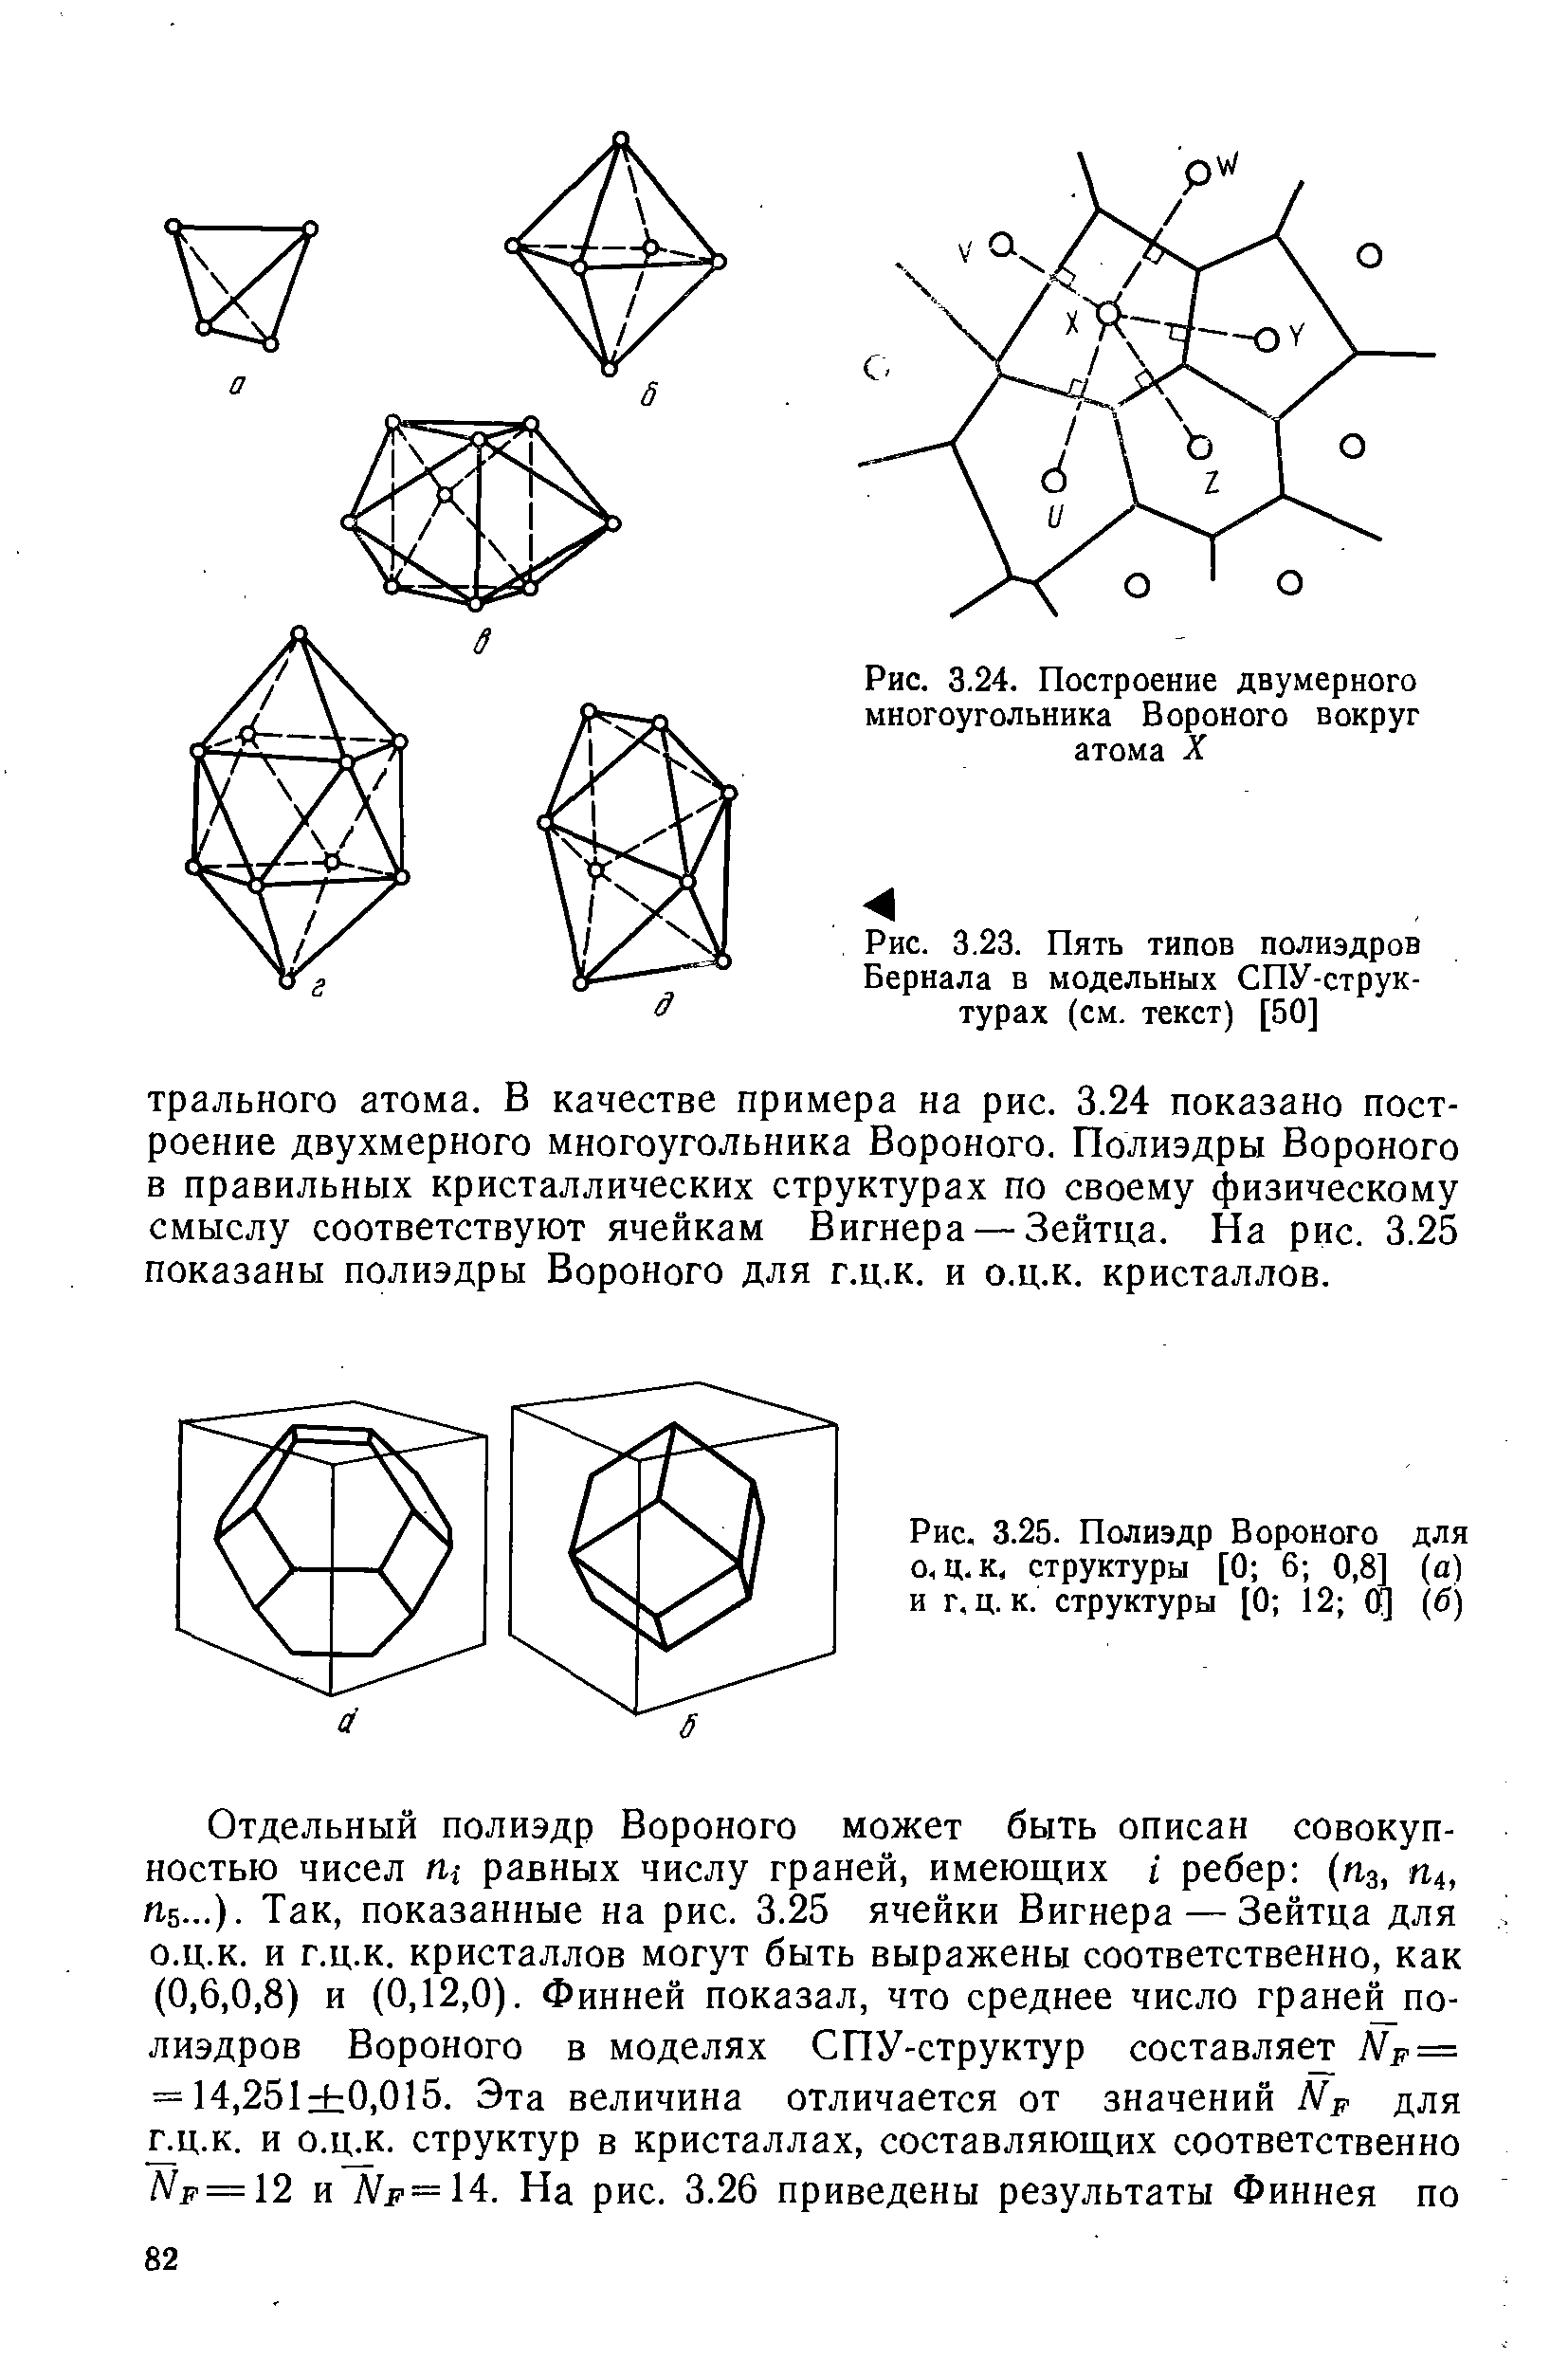 Рис. 3.25. Полиэдр Вороного для о, ц.к, структуры [0 6 0,8] (а) и г.ц.к. структуры [0 12 Щ (б)
